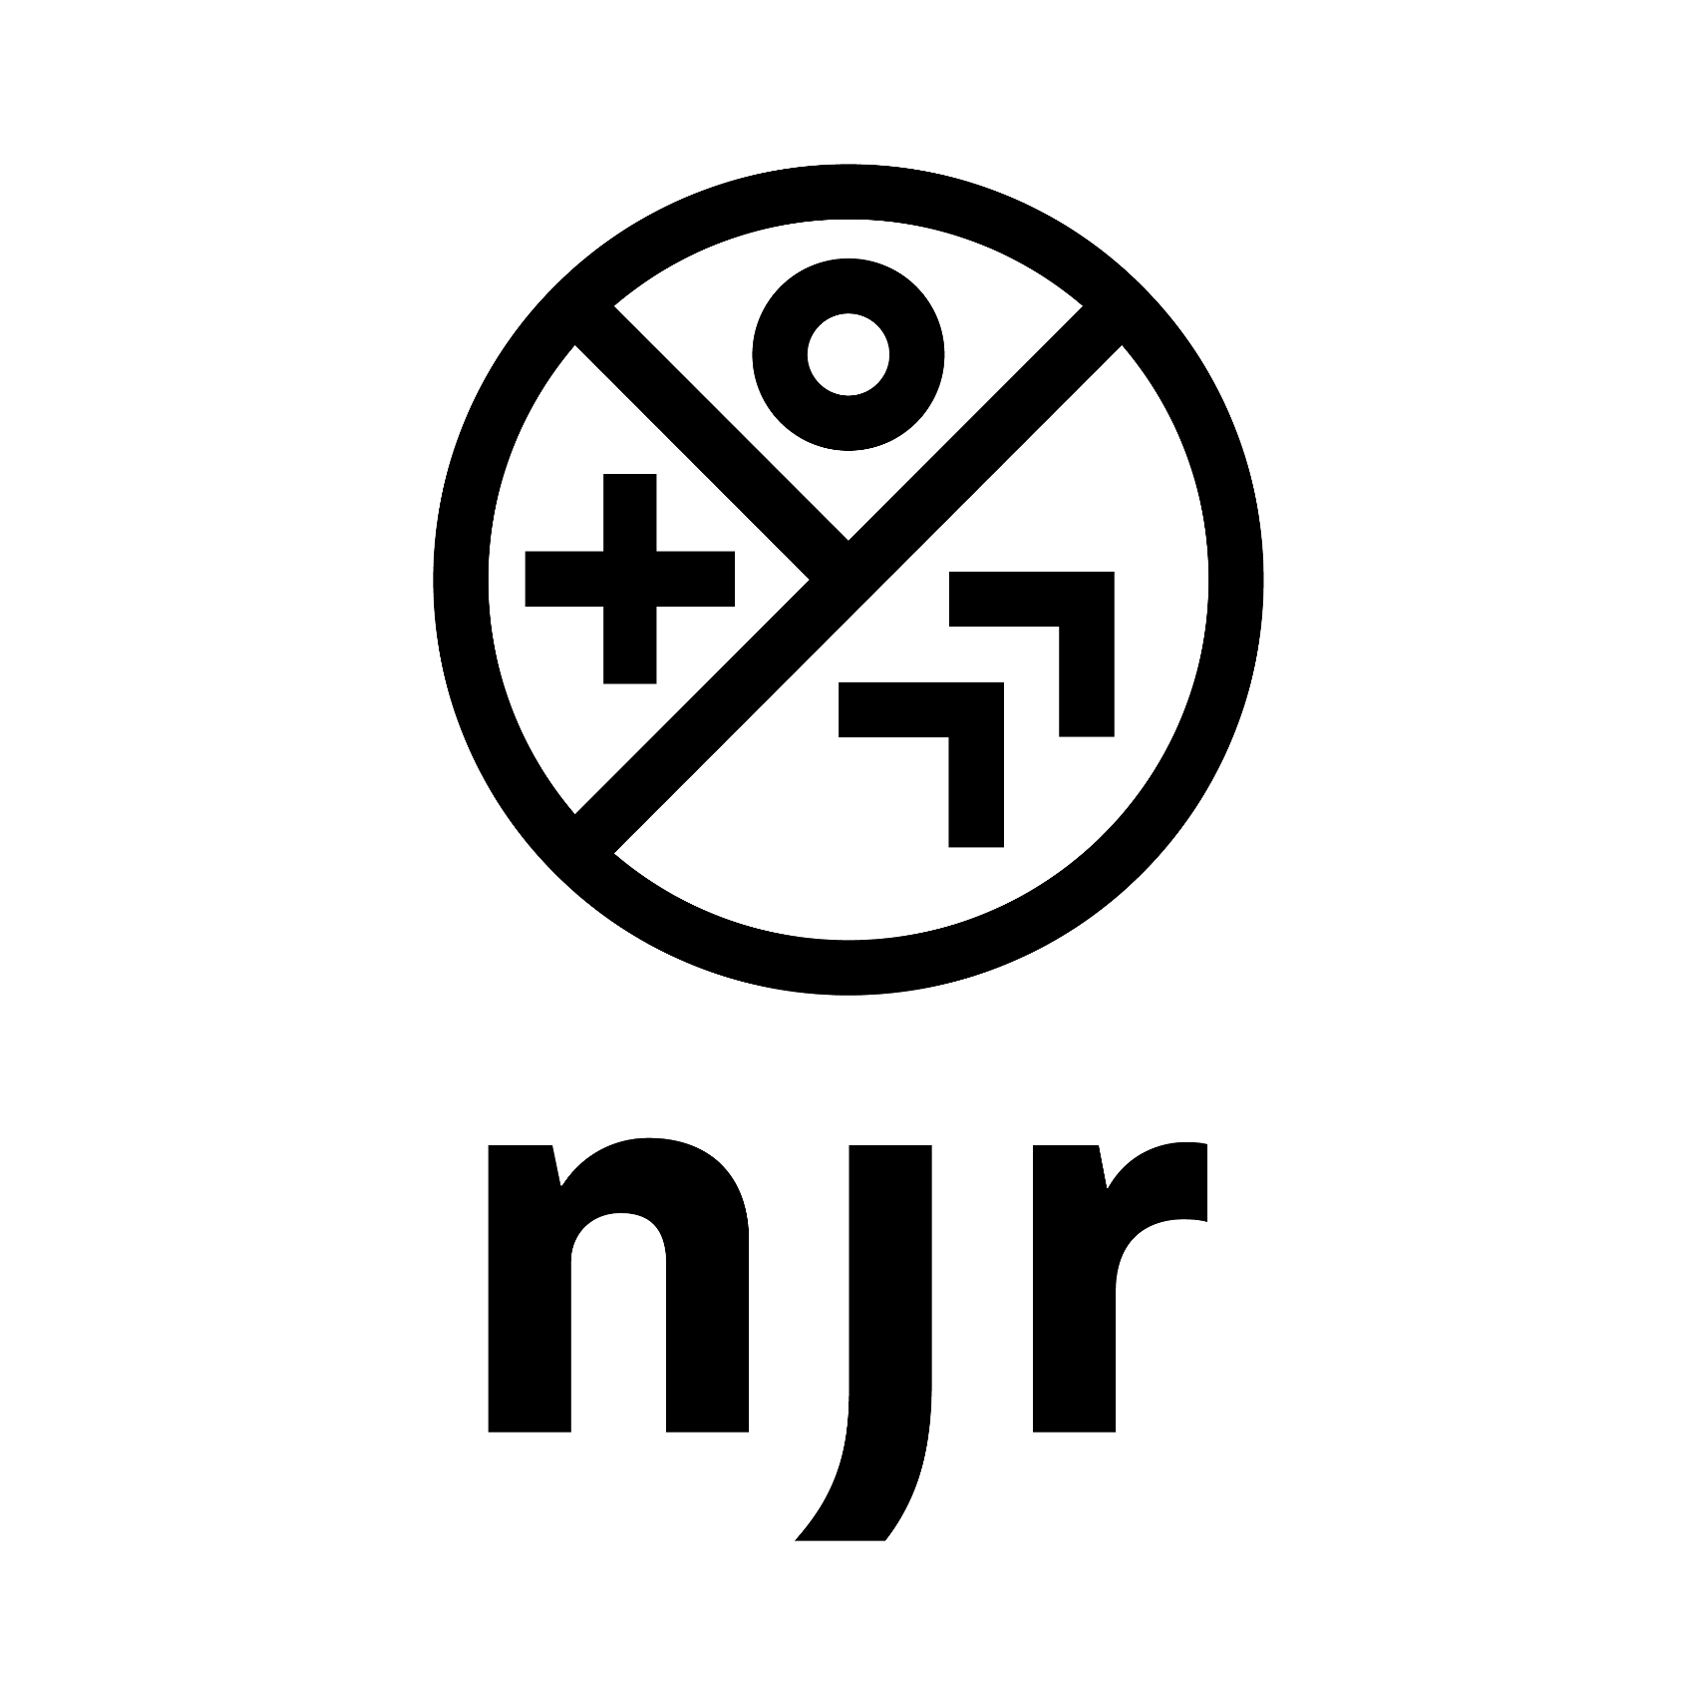 Een zwarte cirkel met tekens, gevolgd door de letters n, j en r